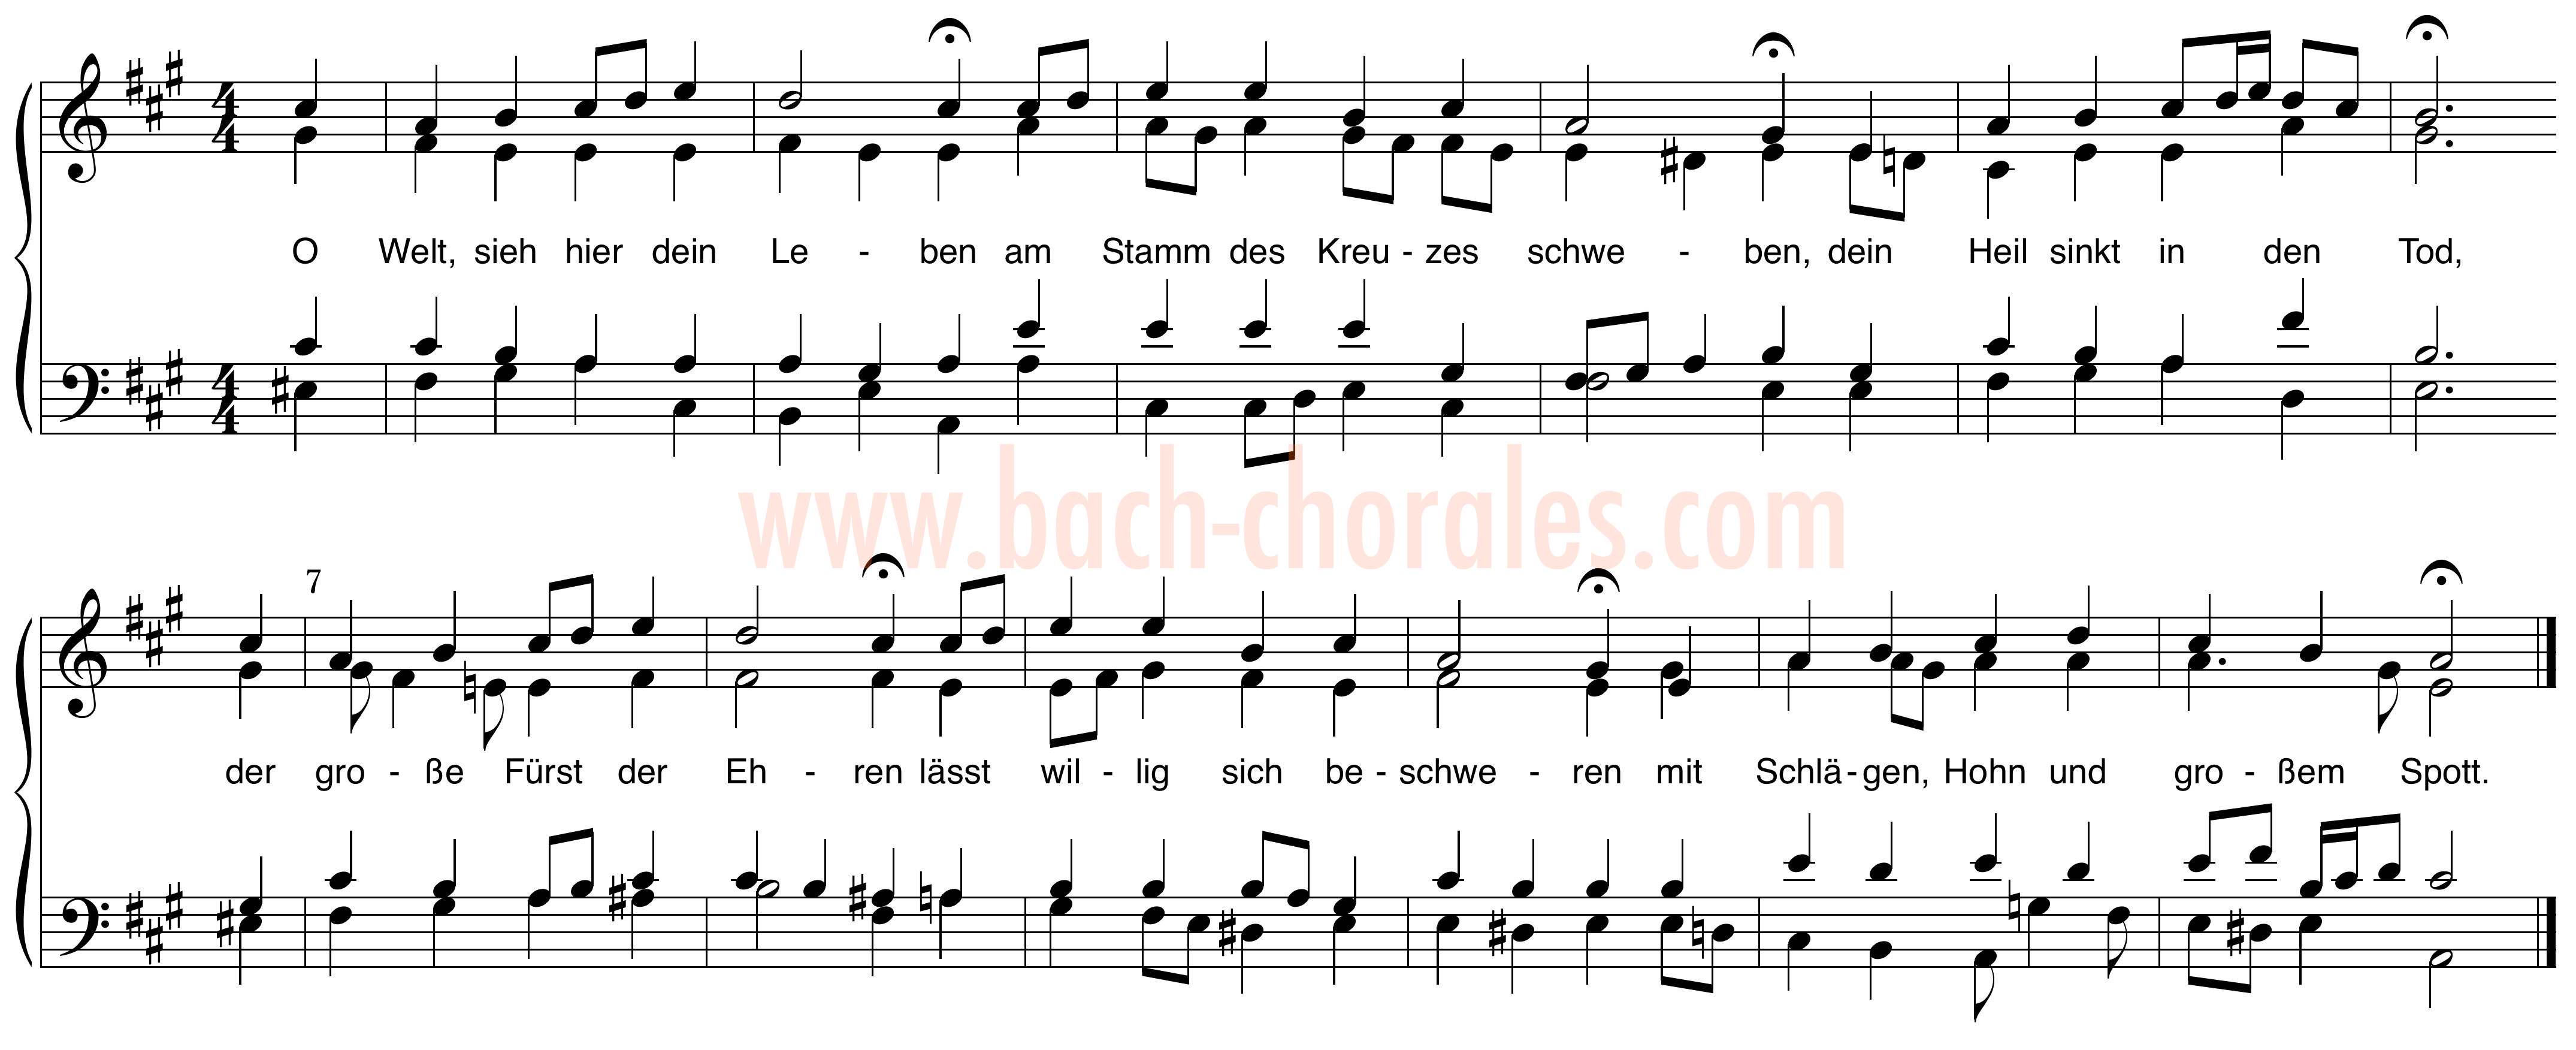 notenbeeld BWV 393 op https://www.bach-chorales.com/